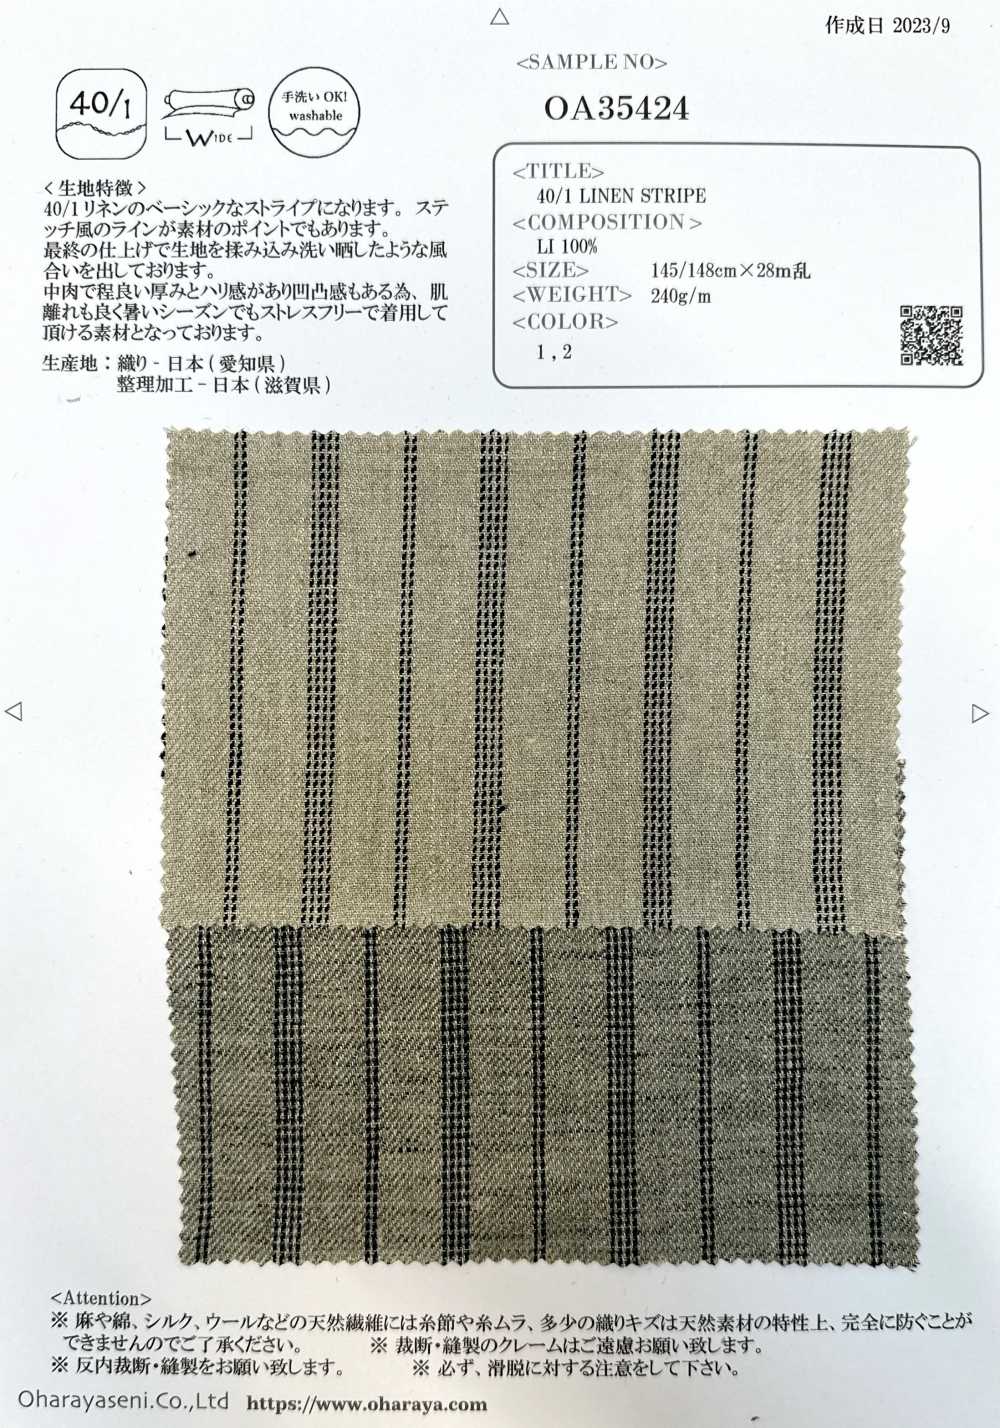 OA35424 40/1 亞麻條紋[面料] 小原屋繊維